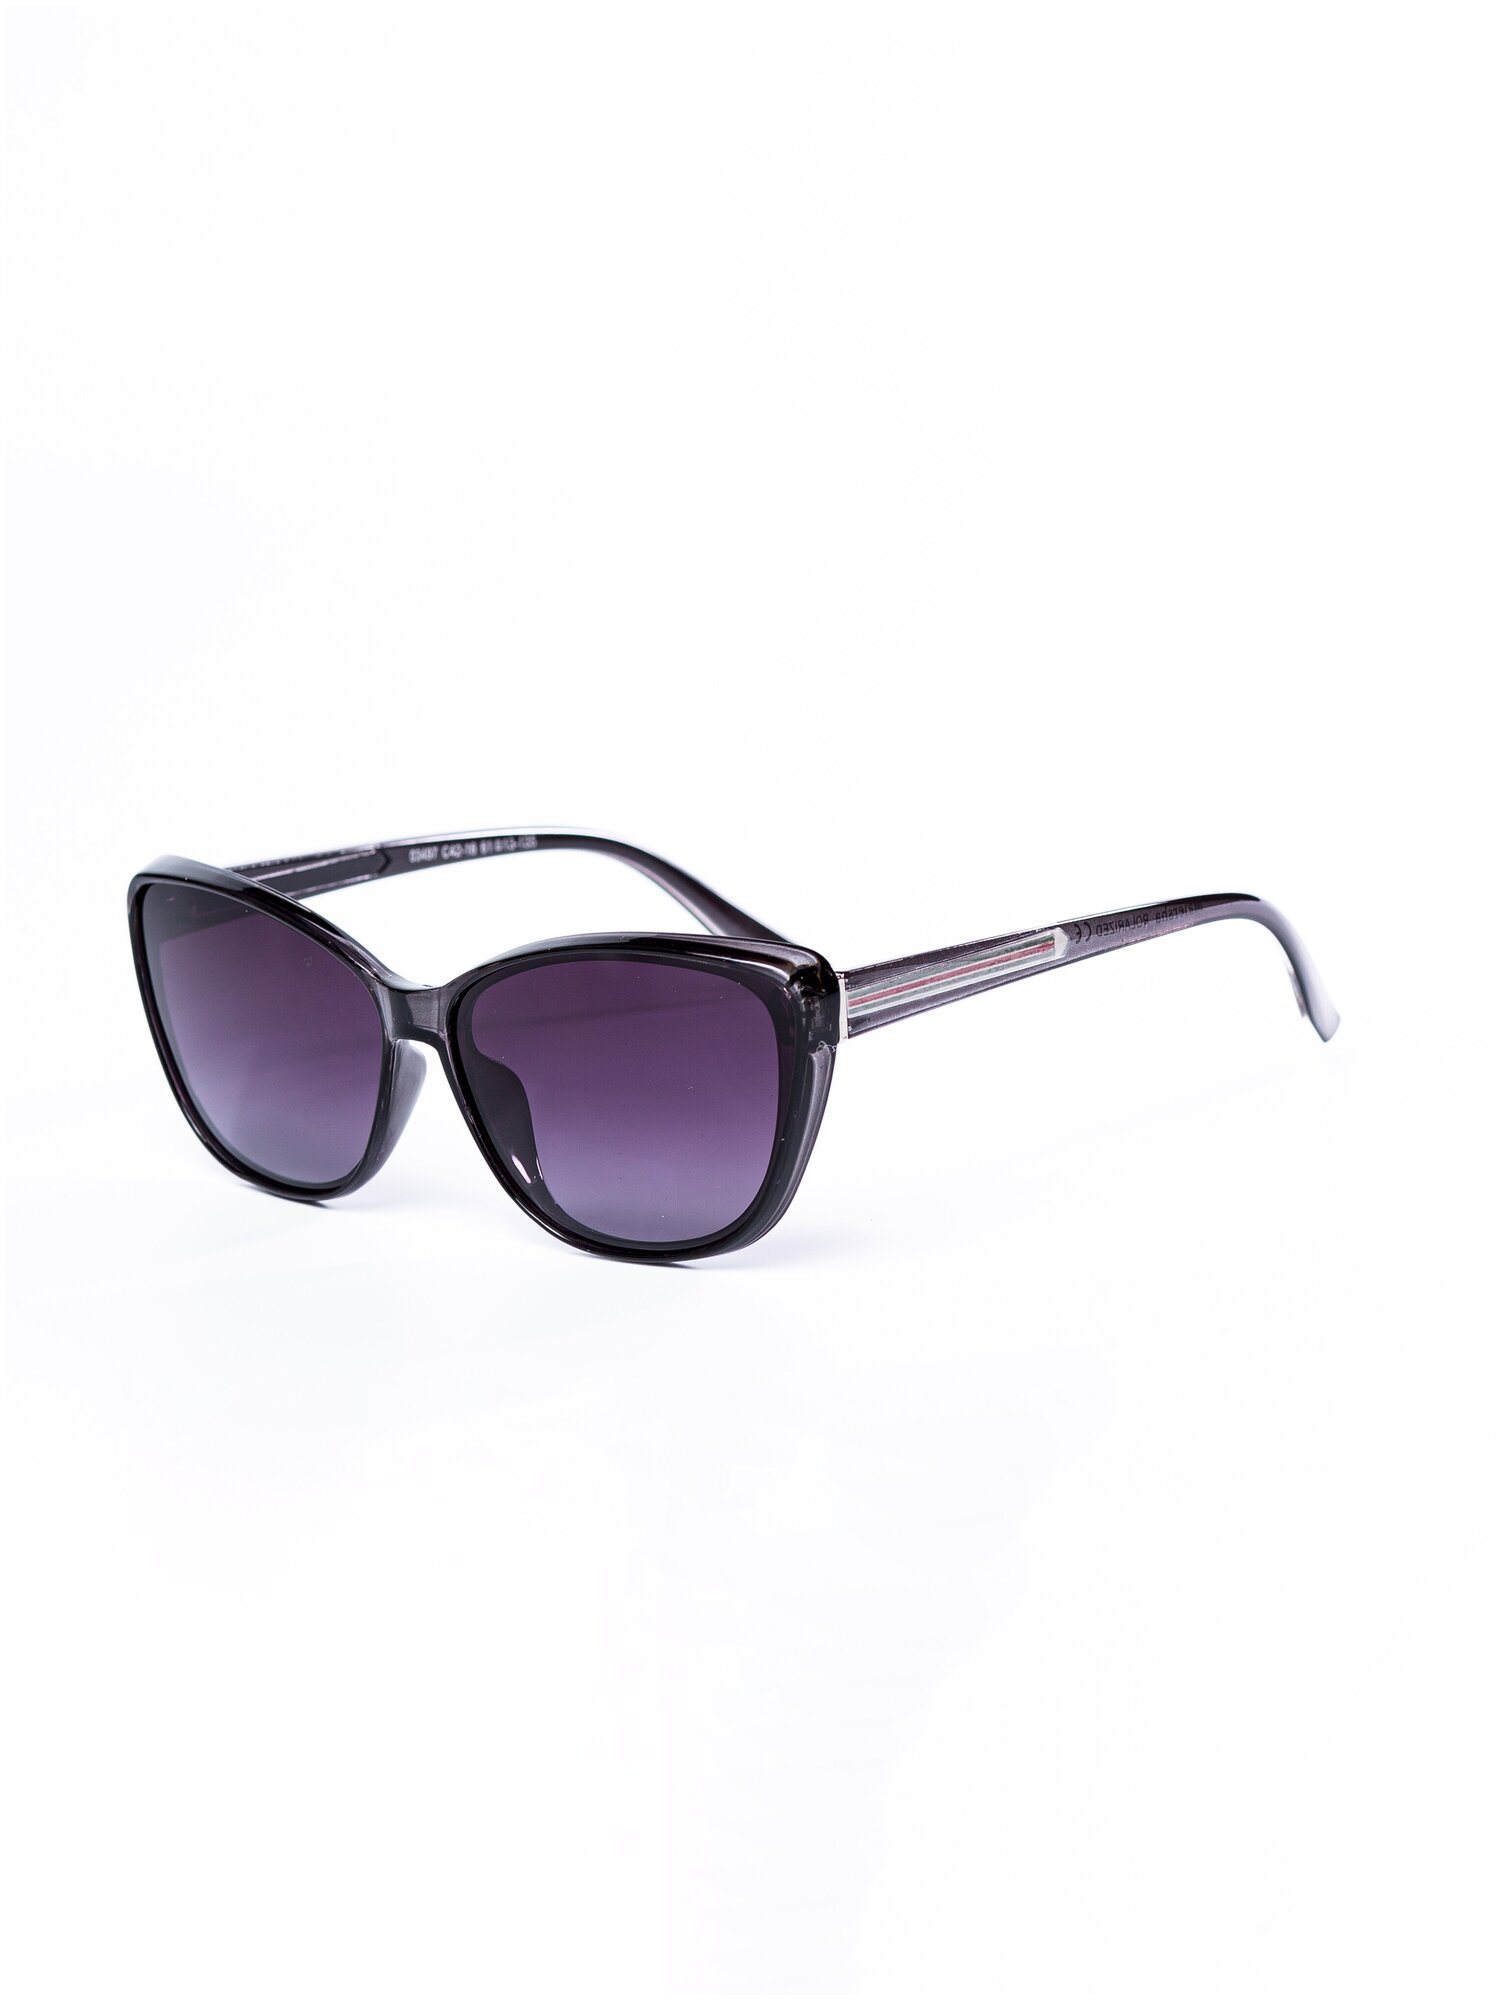 Солнцезащитные очки женские / Оправа «кошачий глаз» / Стильные очки / Ультрафиолетовый фильтр / Защита UV400 / Чехол в подарок / Темные очки 200422526